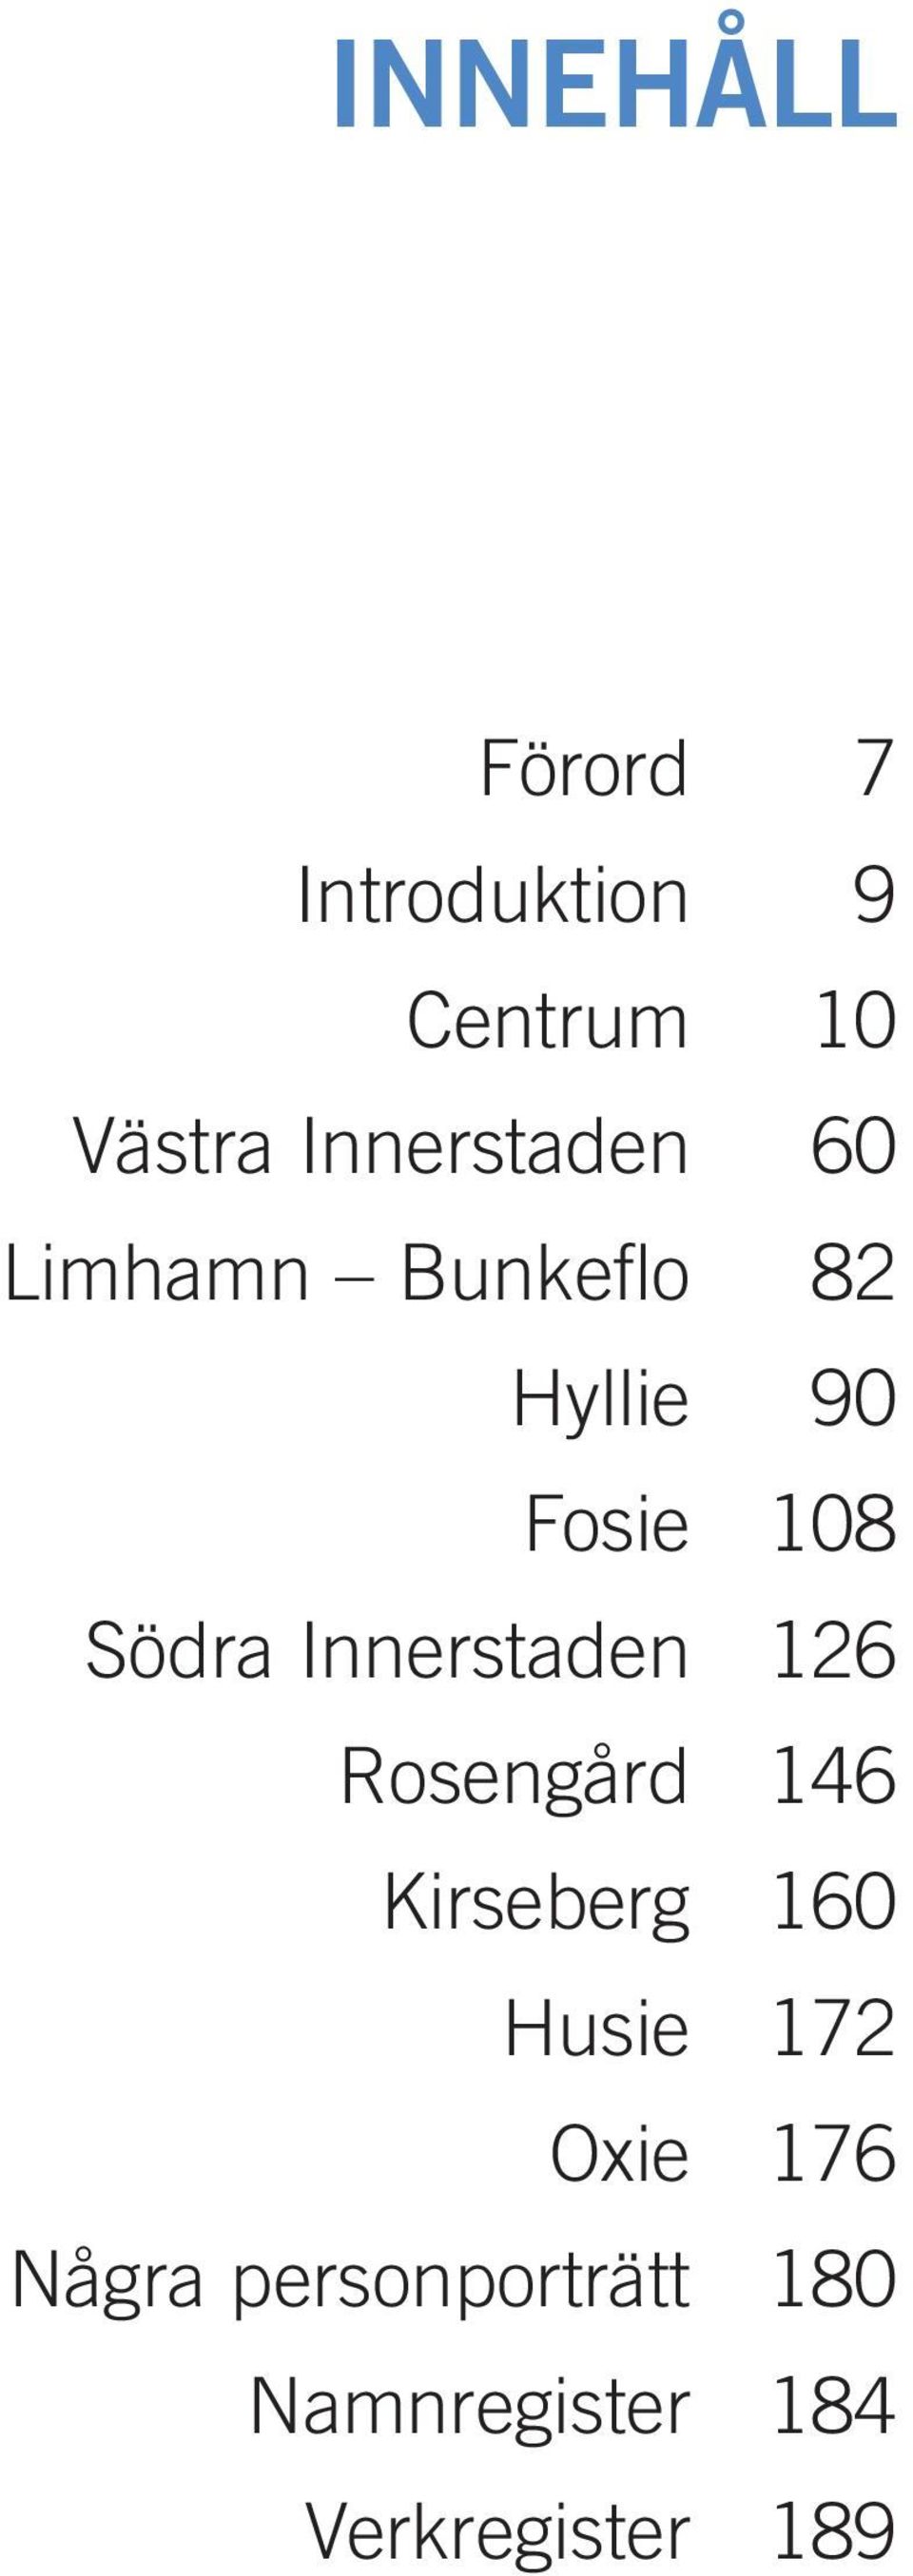 Södra Innerstaden 126 Rosengård 146 Kirseberg 160 Husie